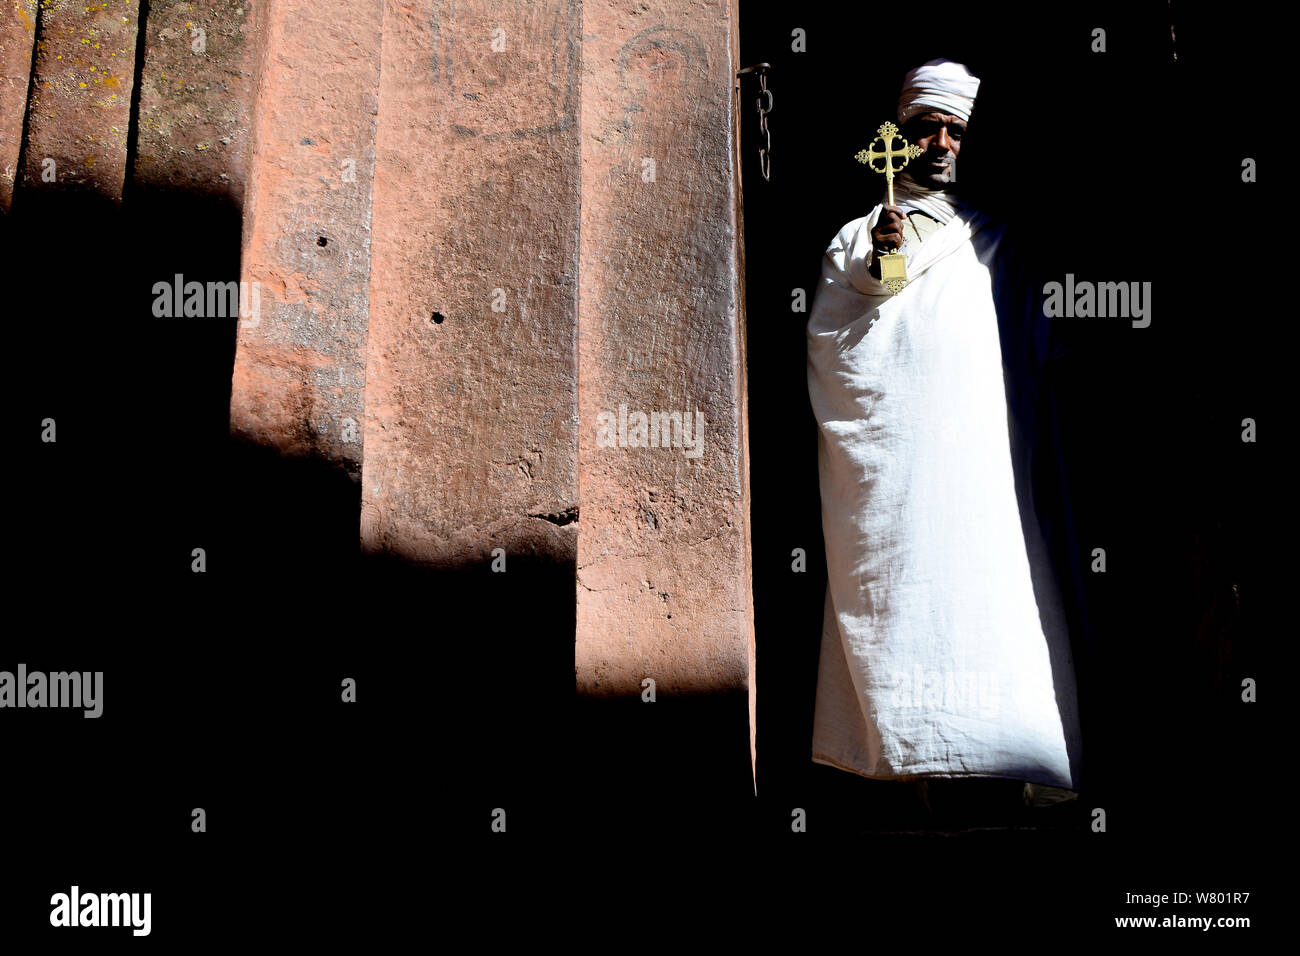 Priester in der traditionellen weißen Gewändern und Turban, mit einem goldenen Kreuz. Wette Giyorgis Kirche, Lalibela. UNESCO-Weltkulturerbe. Äthiopien, Dezember 2014. Stockfoto